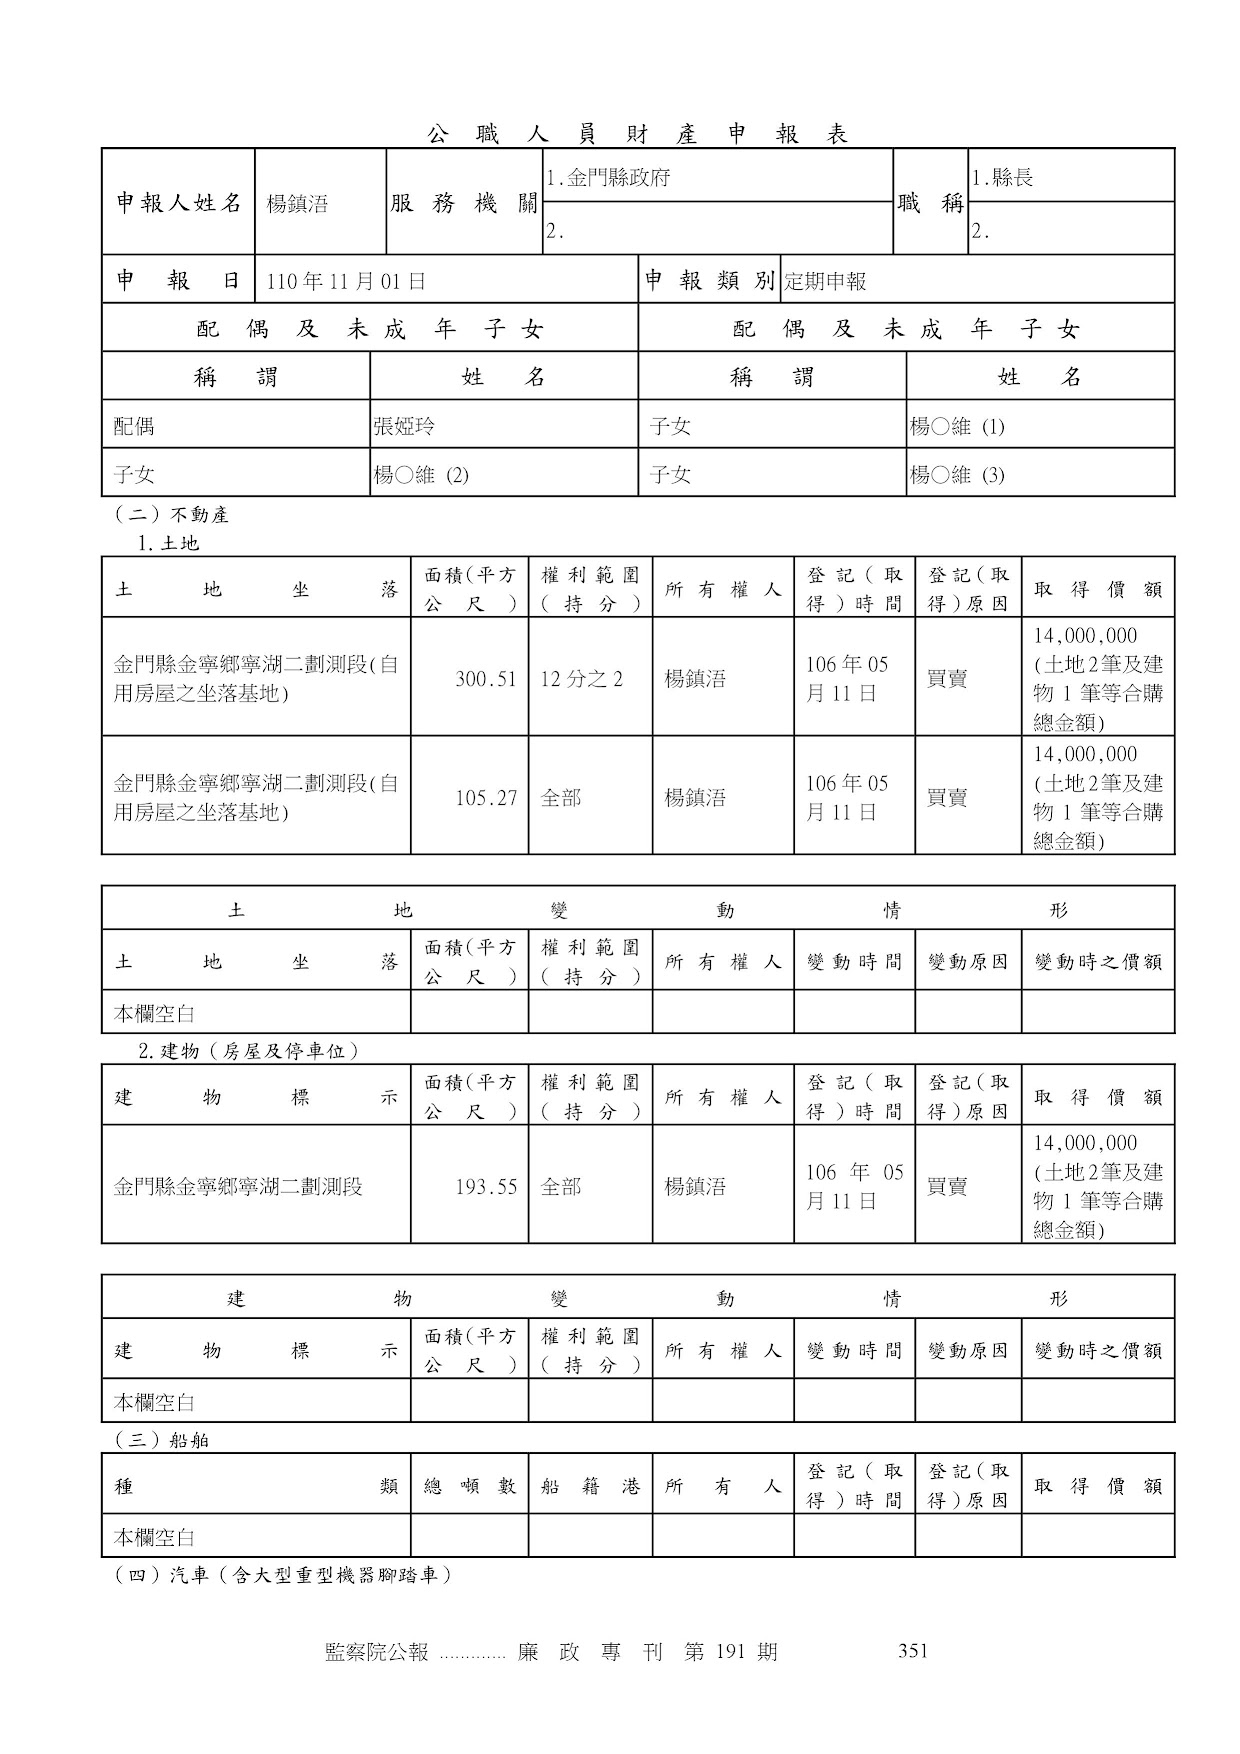 楊鎮浯-公職人員財產申報資料-廉政專刊第191期